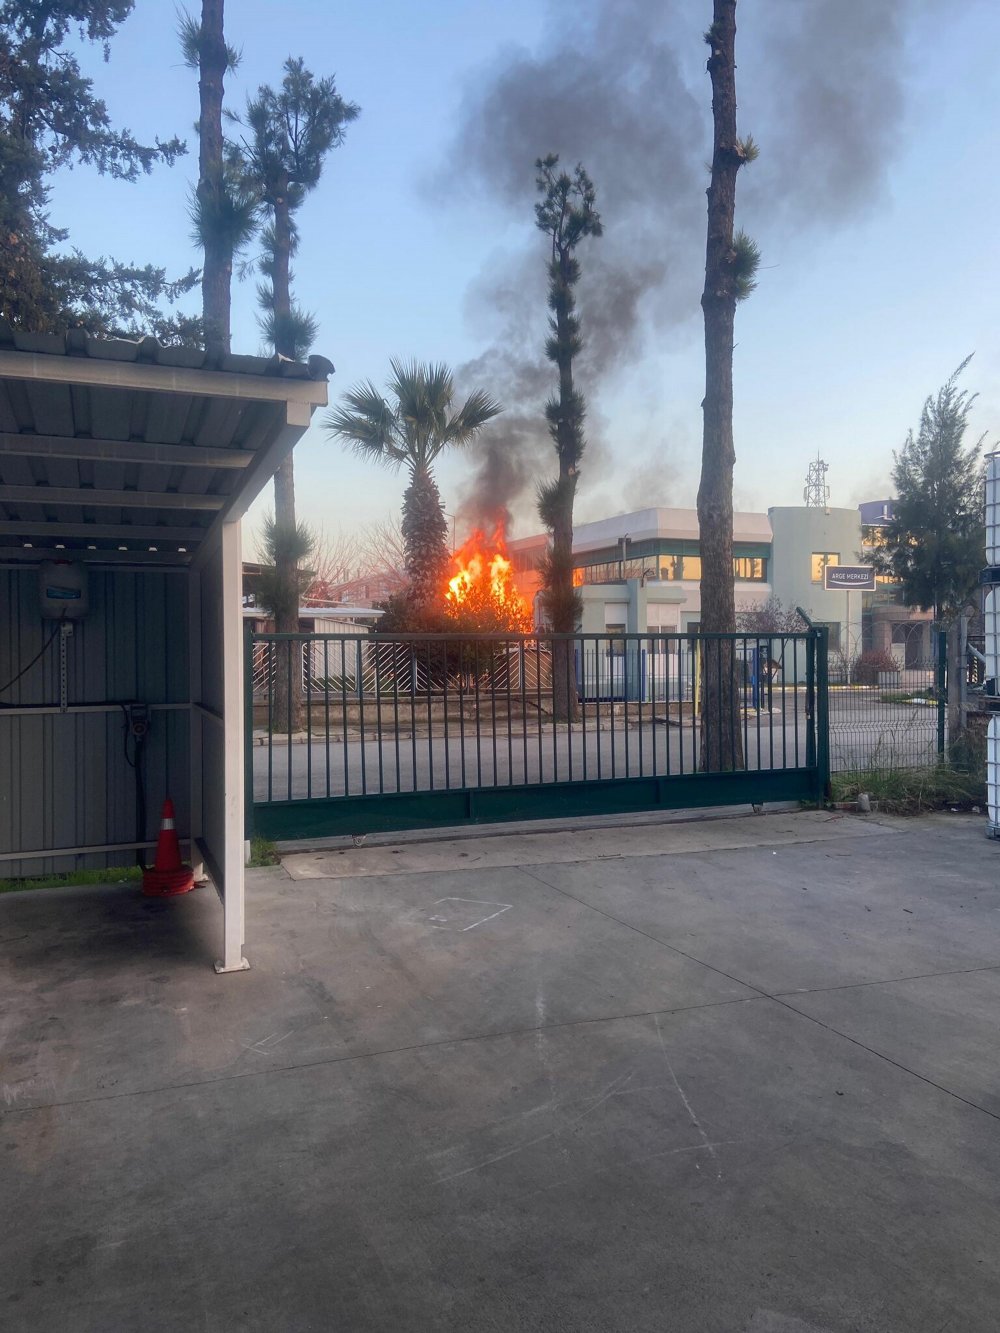 İzmir'de parfüm fabrikasında yangın: 1 ölü, 3 yaralı